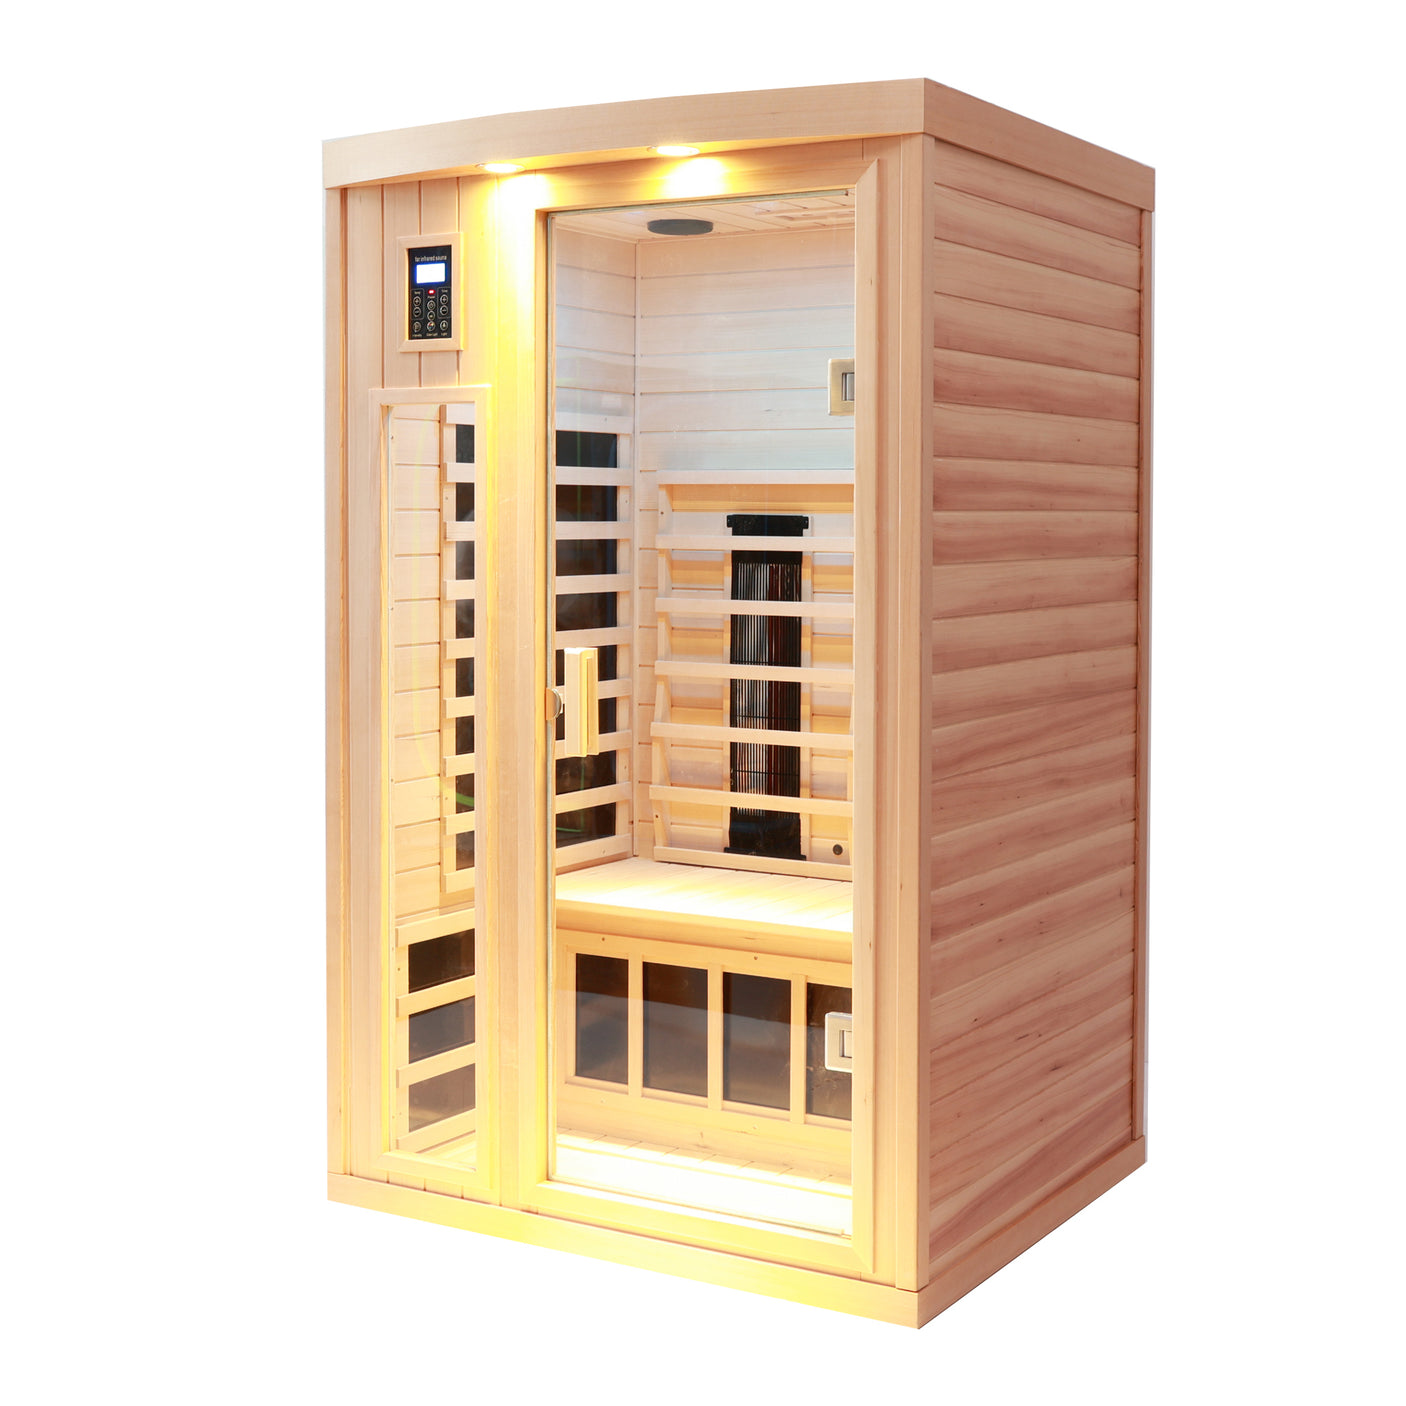 Two person indoor hemlock sauna - Home Elegance USA